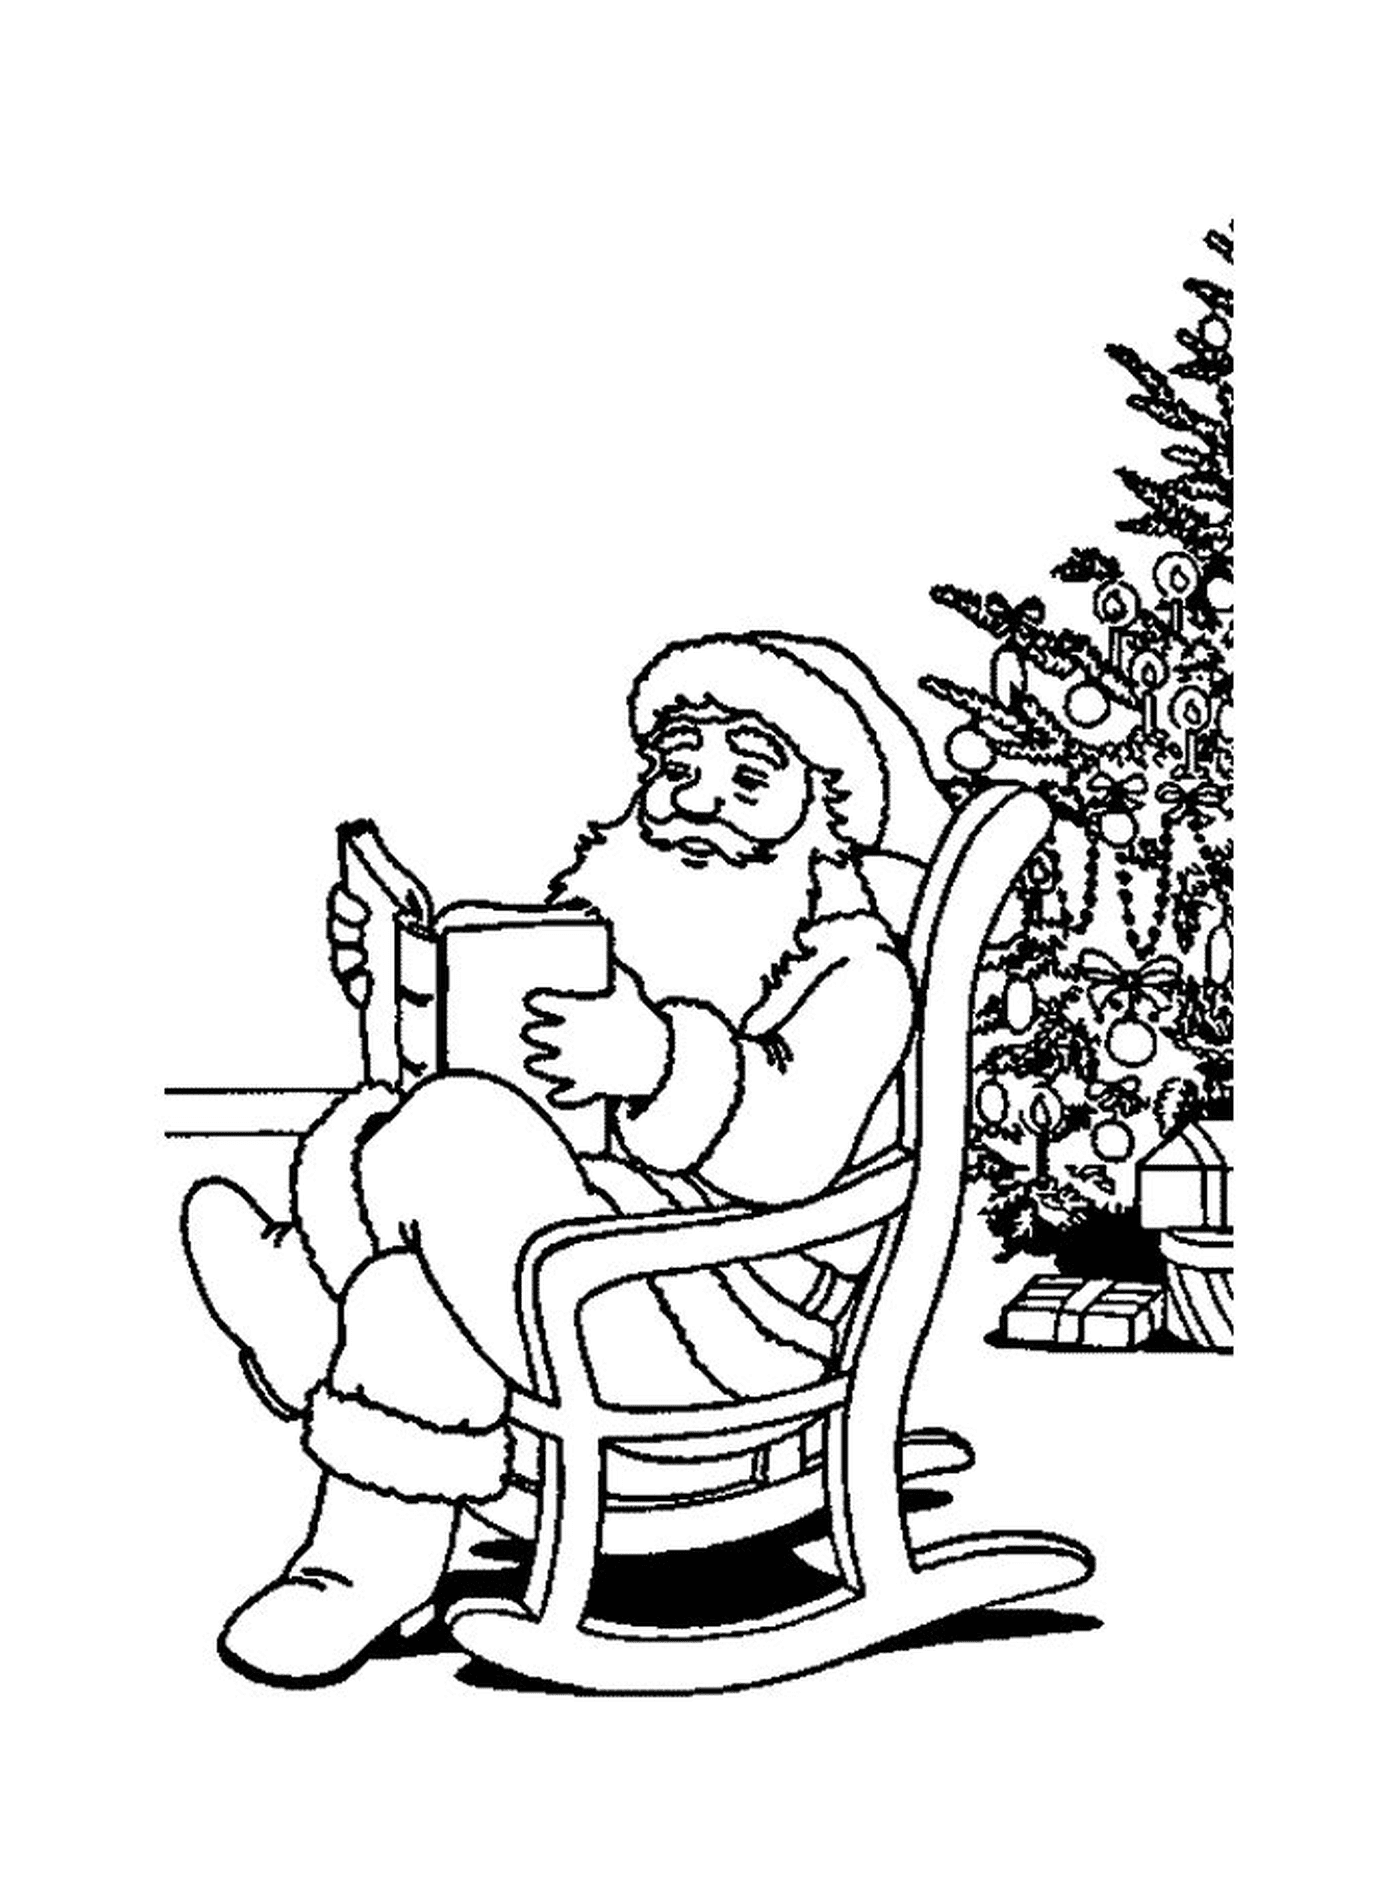  圣诞老人在一棵树上阅读一本书 